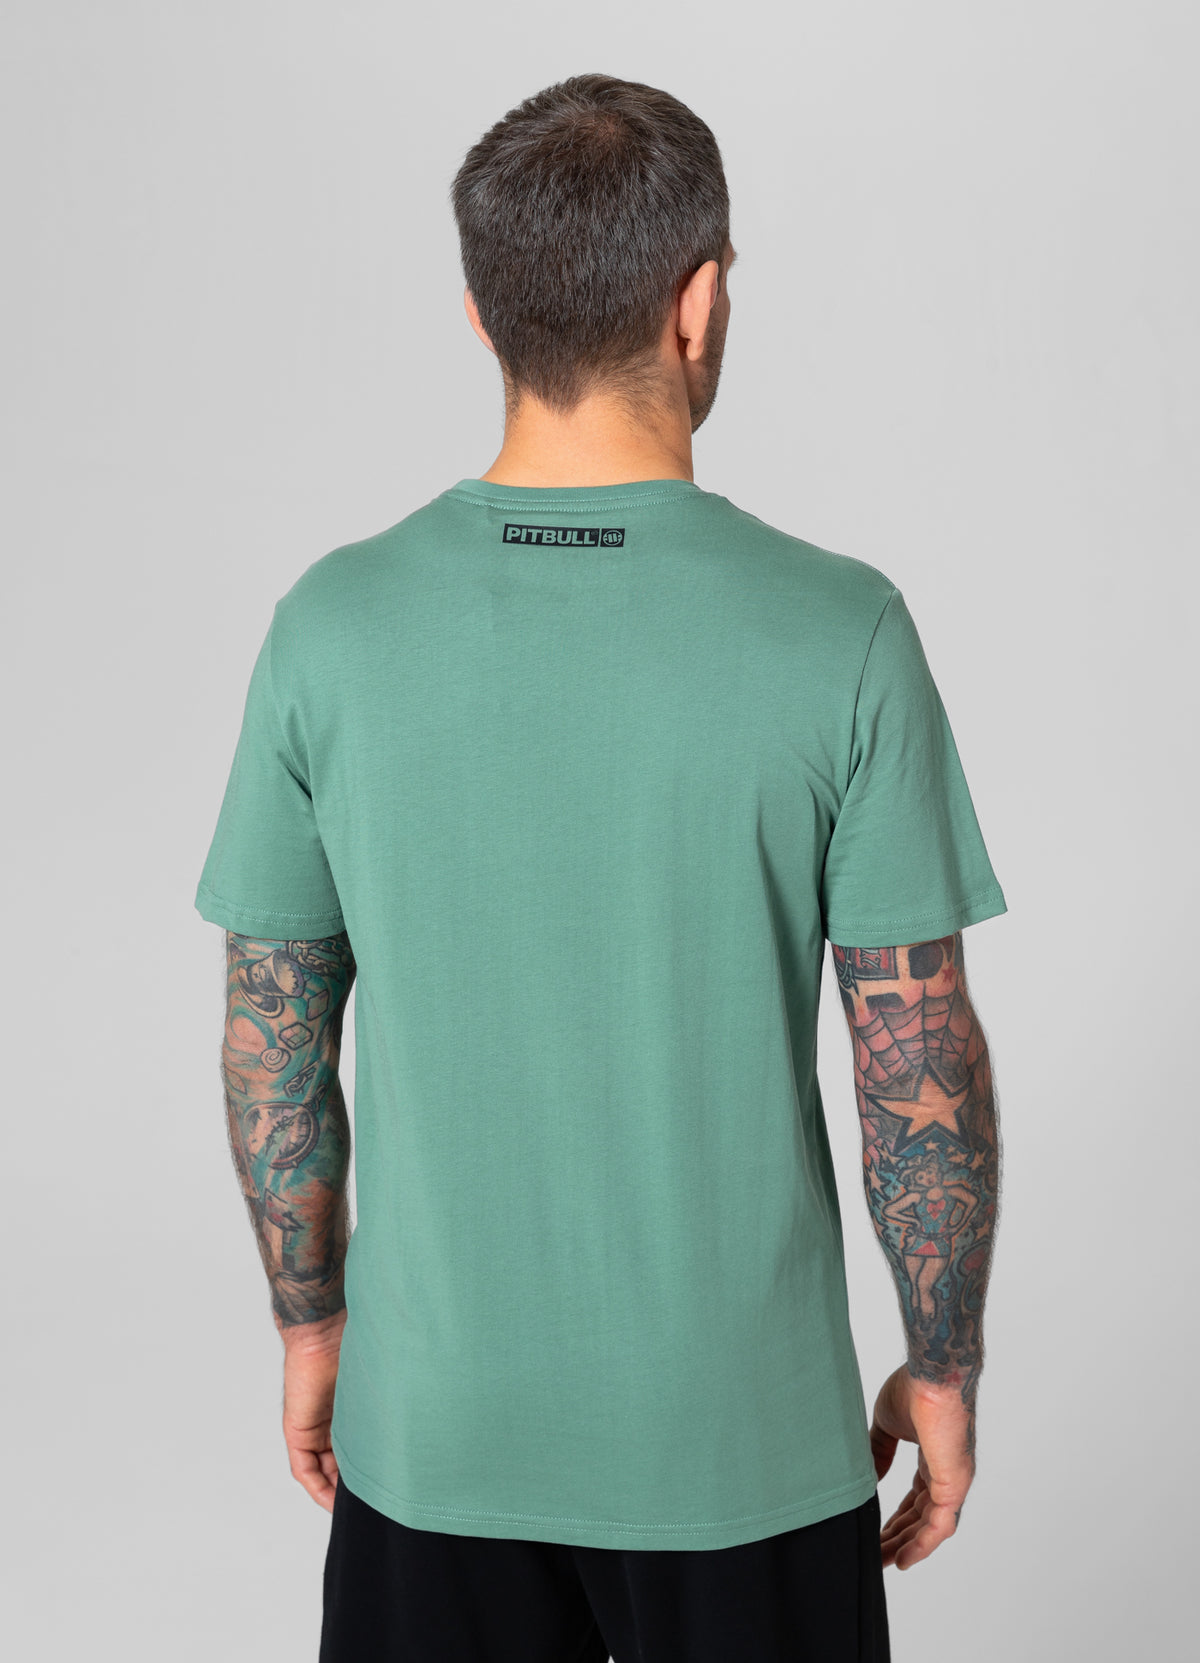 HILLTOP Lightweight Mint T-shirt